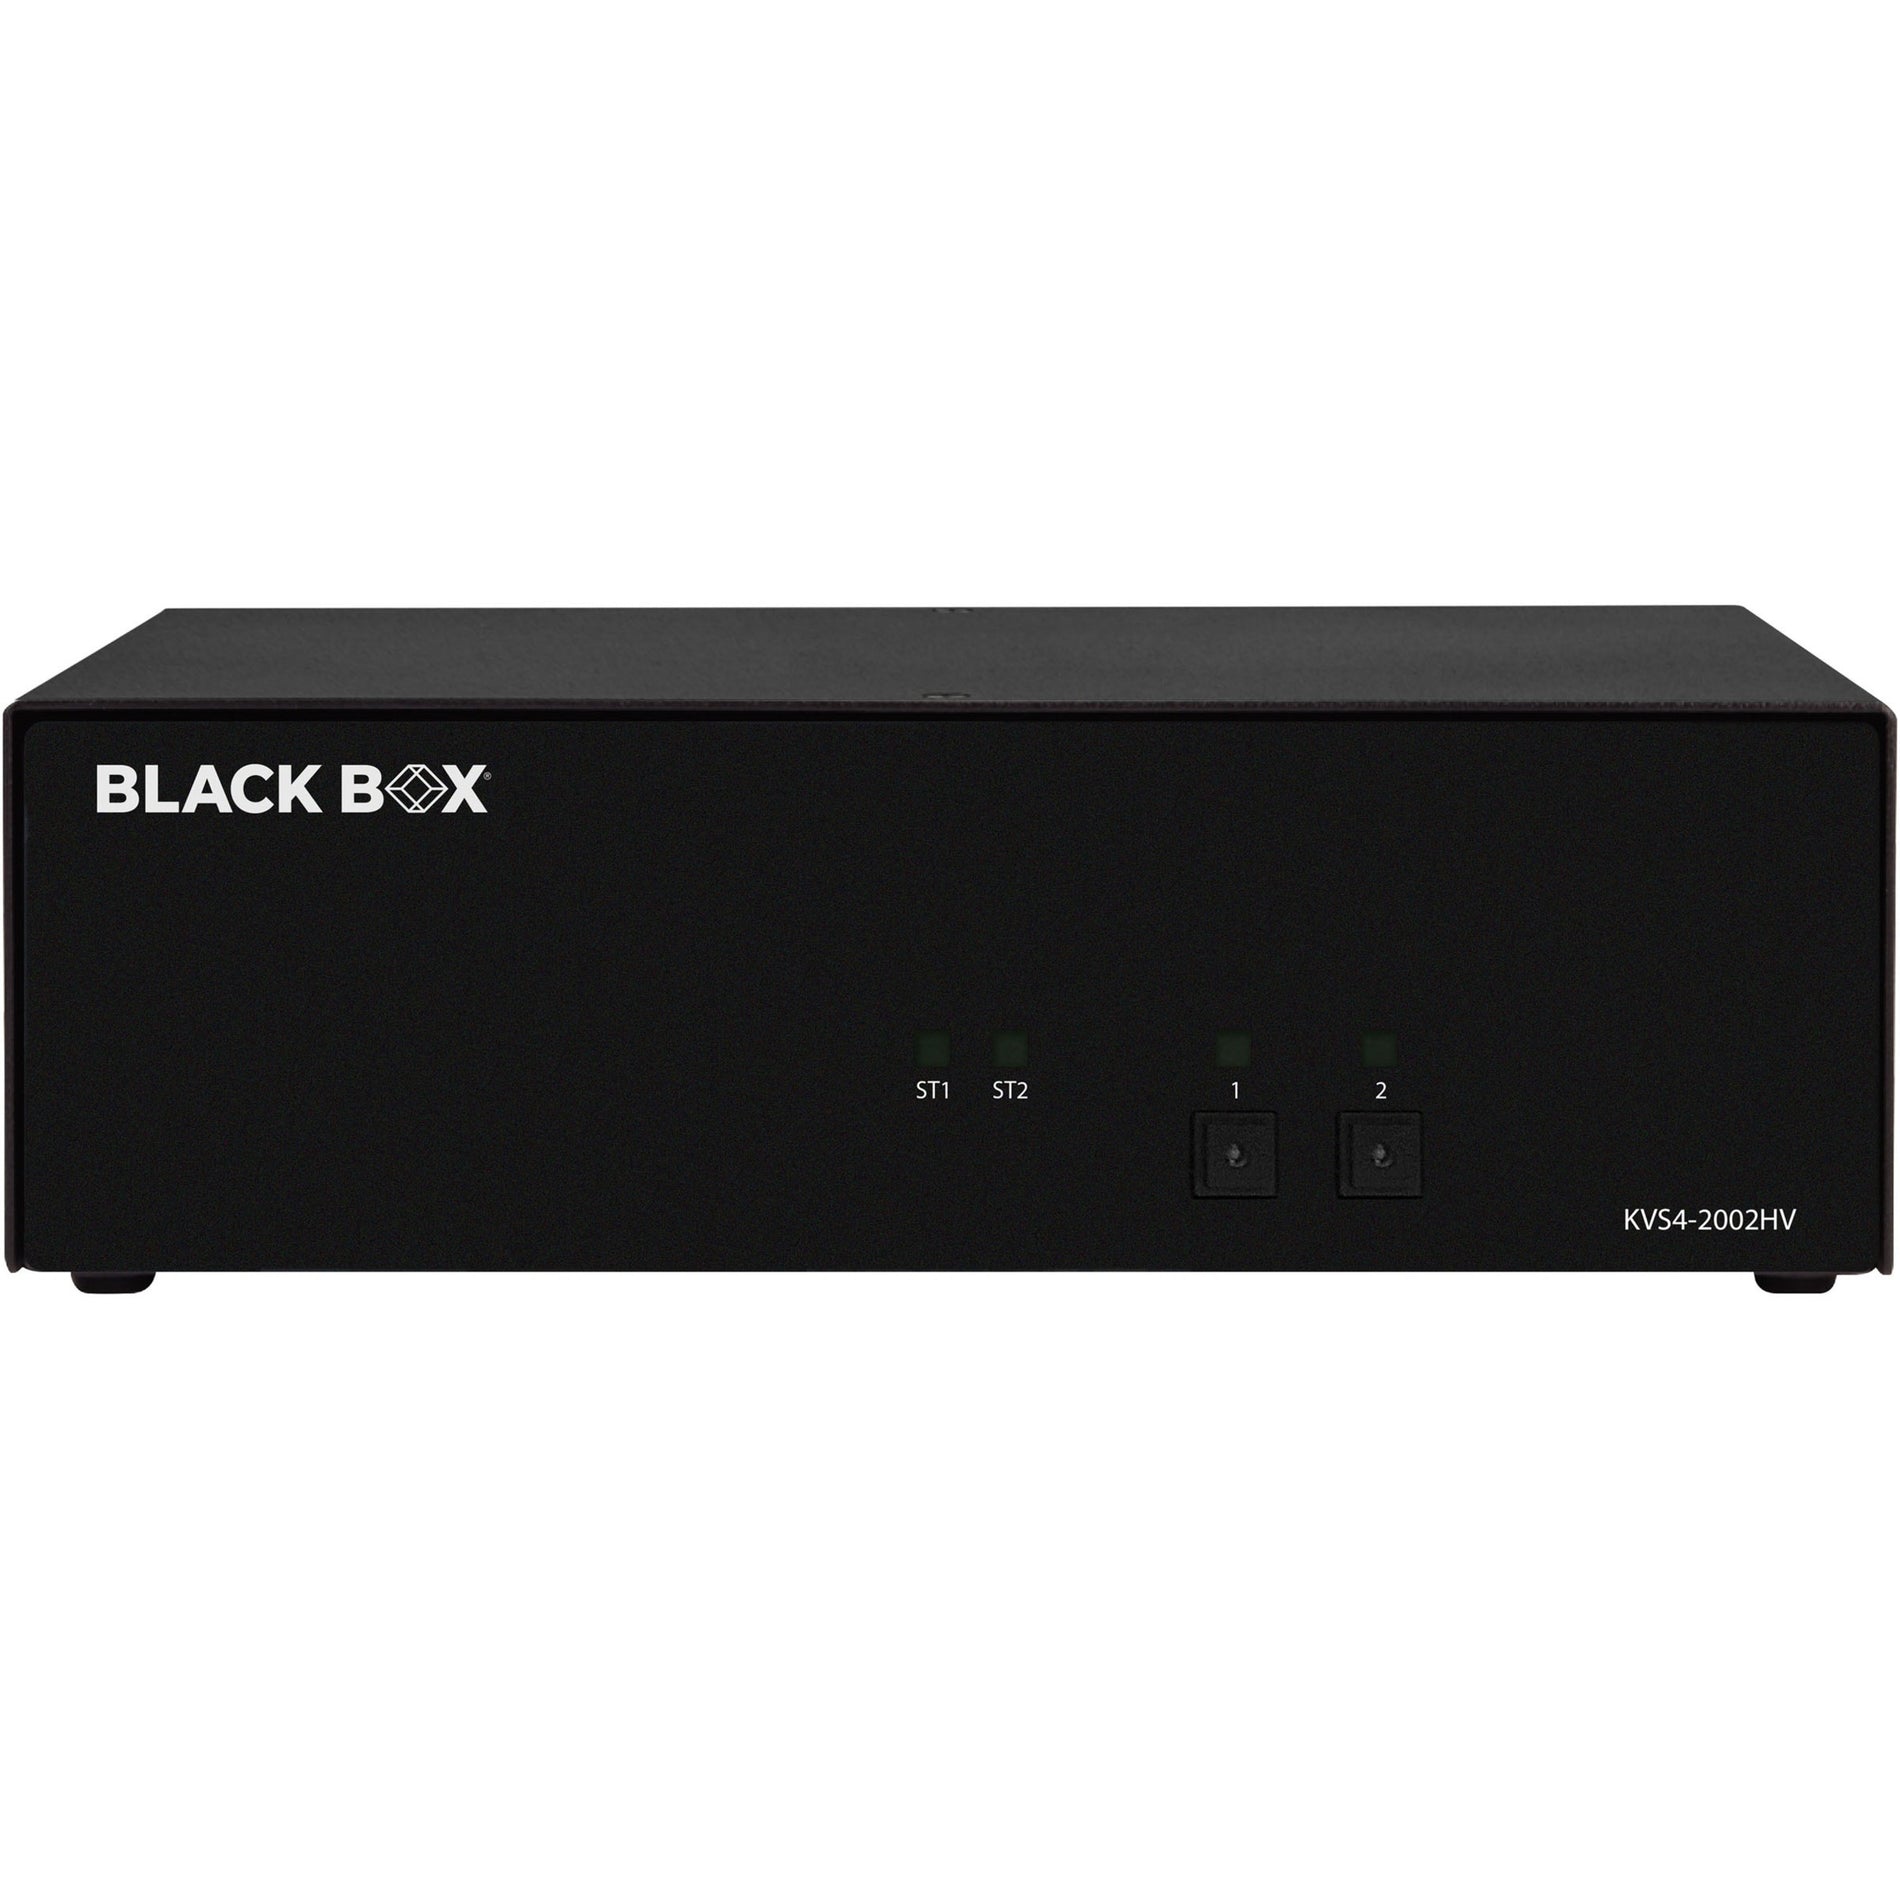 Μαύρο Κουτί KVS4-2002HV Ασφαλής Διακόπτης KVM - FlexPort HDMI/DisplayPort 4 Θύρες USB Ανάλυση 3840 x 2160 Εγγύηση 1 Έτος